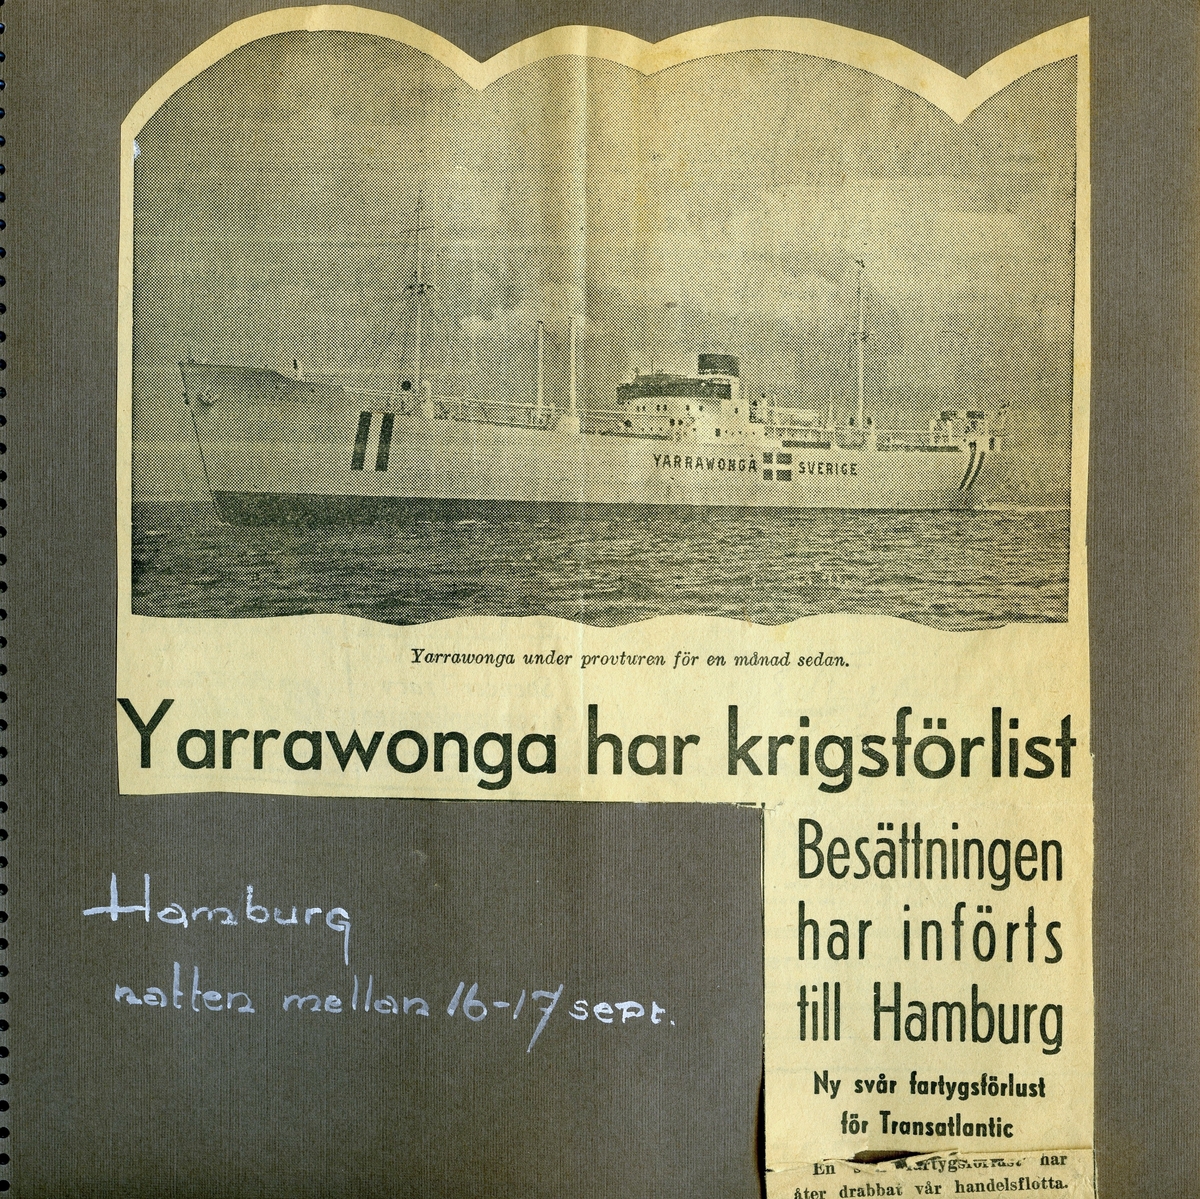 Tidningsnotis om M/S Yarrawongas* (Transatlantic) krigsförlisning, 16 - 17 sept 1941, då besättningen, med blanda annat Styrman Björn Ekman (1913 - 1992), fördes till Hamburg.
*Byggd för REDERI AB WALLENCO (WALLENIUS). Sjösatt som M/S RIGOLETTO. Såld före leverans till REDERI AB TRANSATLANTIC, Göteborg. M/S YARRAWONGA. Torpederad 16 - 17 september 1941 av engelskt flyg i Hamburgs hamn. Bärgad och bogserad till Eriksberg för reparation.
Såld 1971 till SANMAR CIA NAV SA, Grekland. M/S AFRICAN GLORY.
Upphuggen 1978 i Italien.